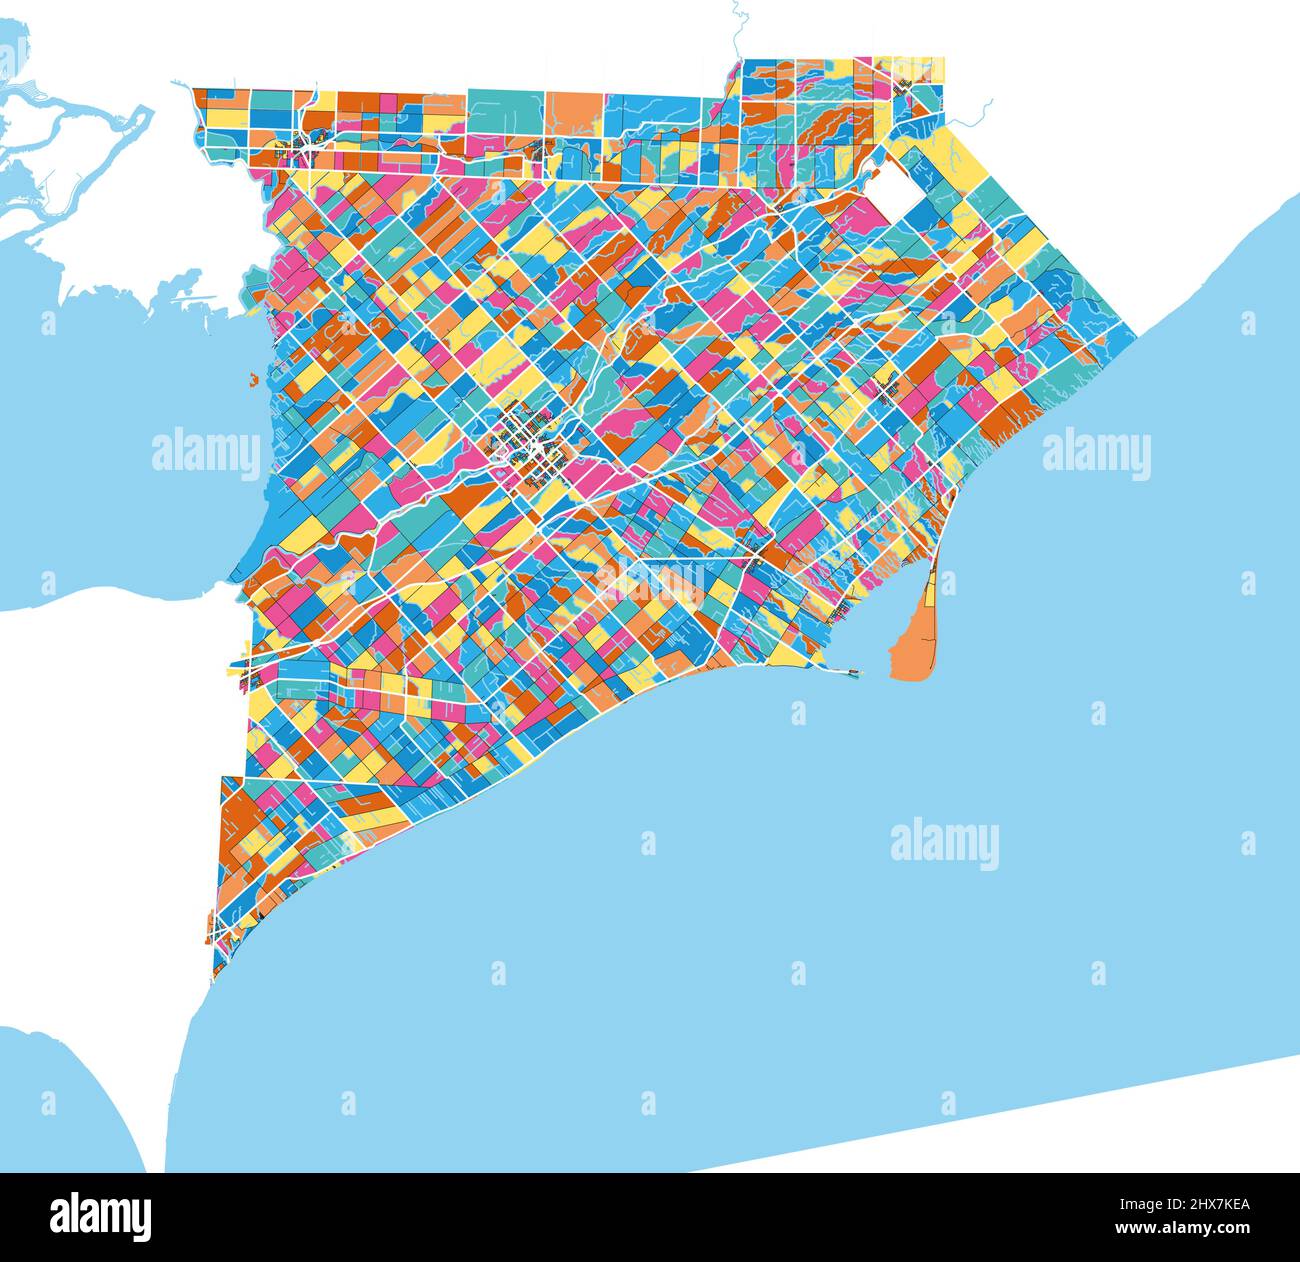 Chatham-Kent, Ontario, Canada Mappa colorata di arte vettoriale ad alta risoluzione con i confini della città. Contorni bianchi per le strade principali. Molti dettagli. Forme blu f Illustrazione Vettoriale